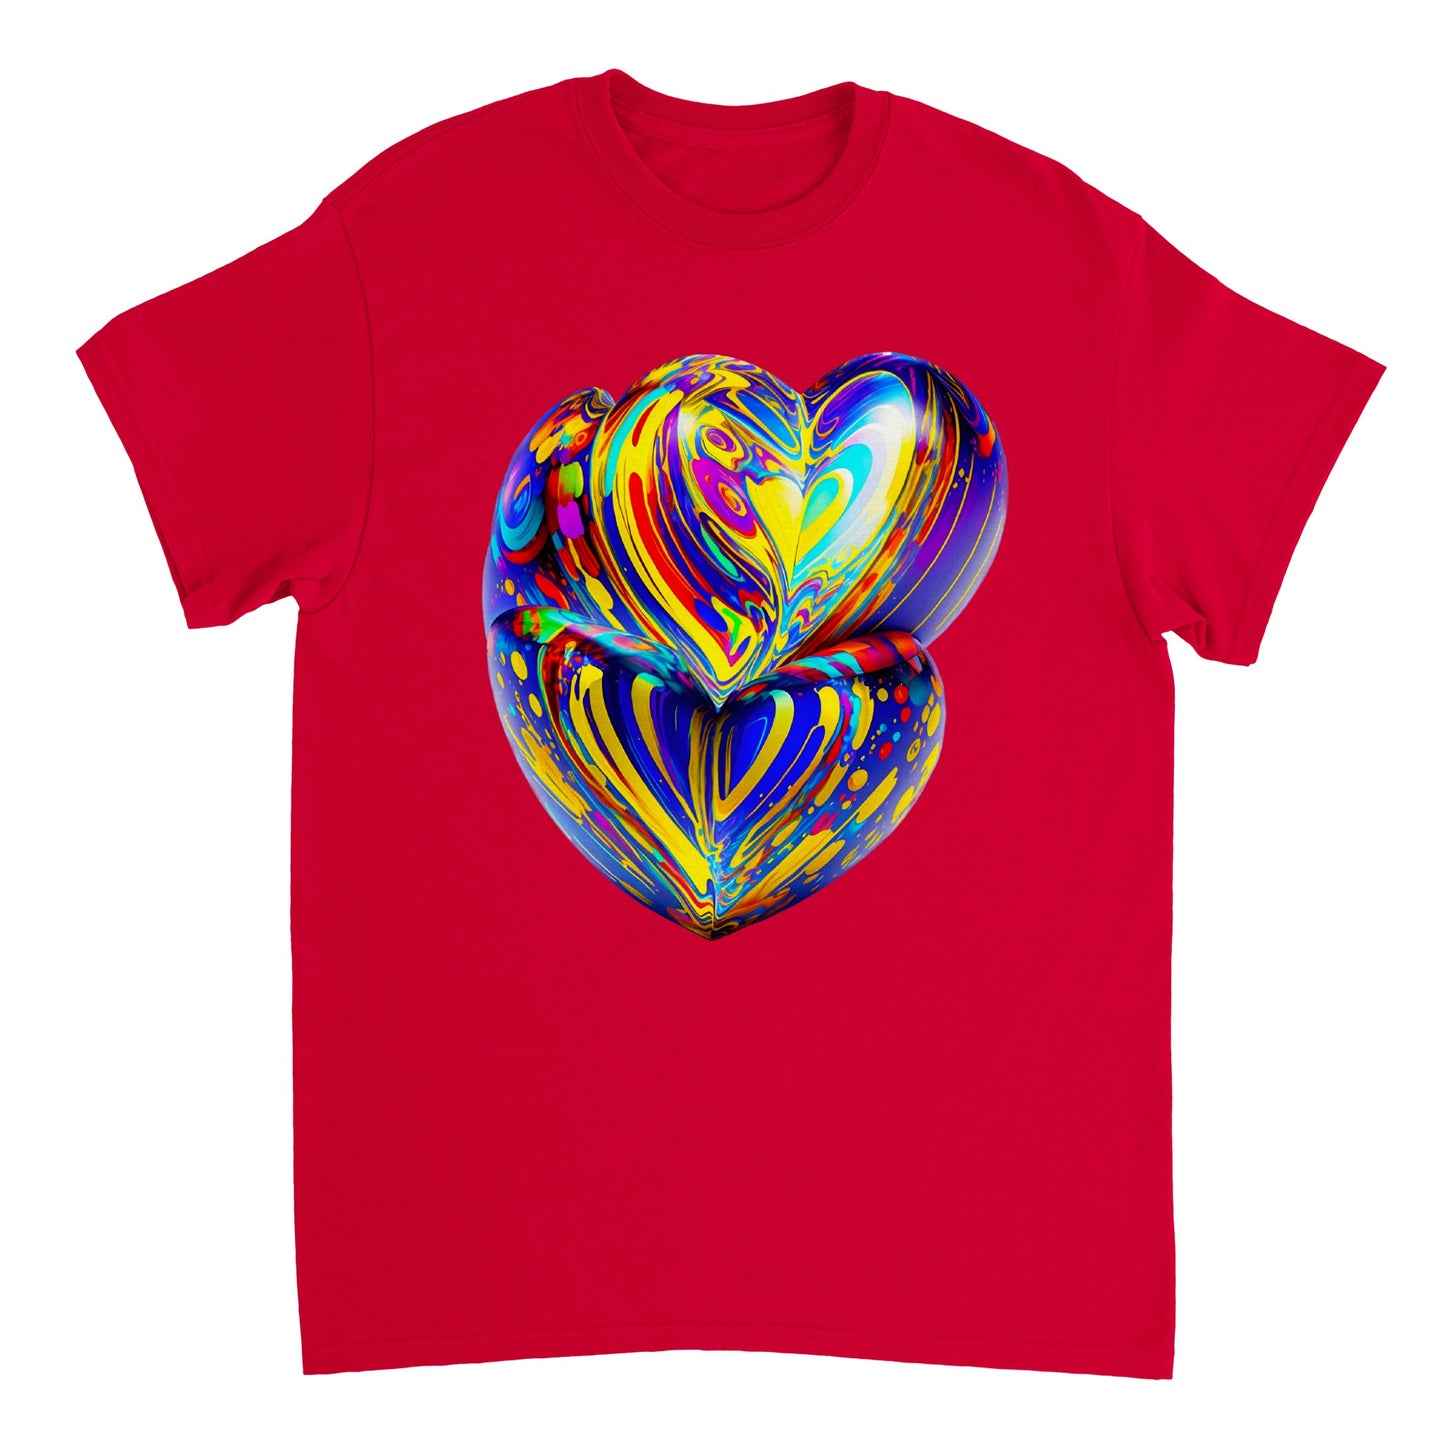 Love Heart - Heavyweight Unisex Crewneck T-shirt 2